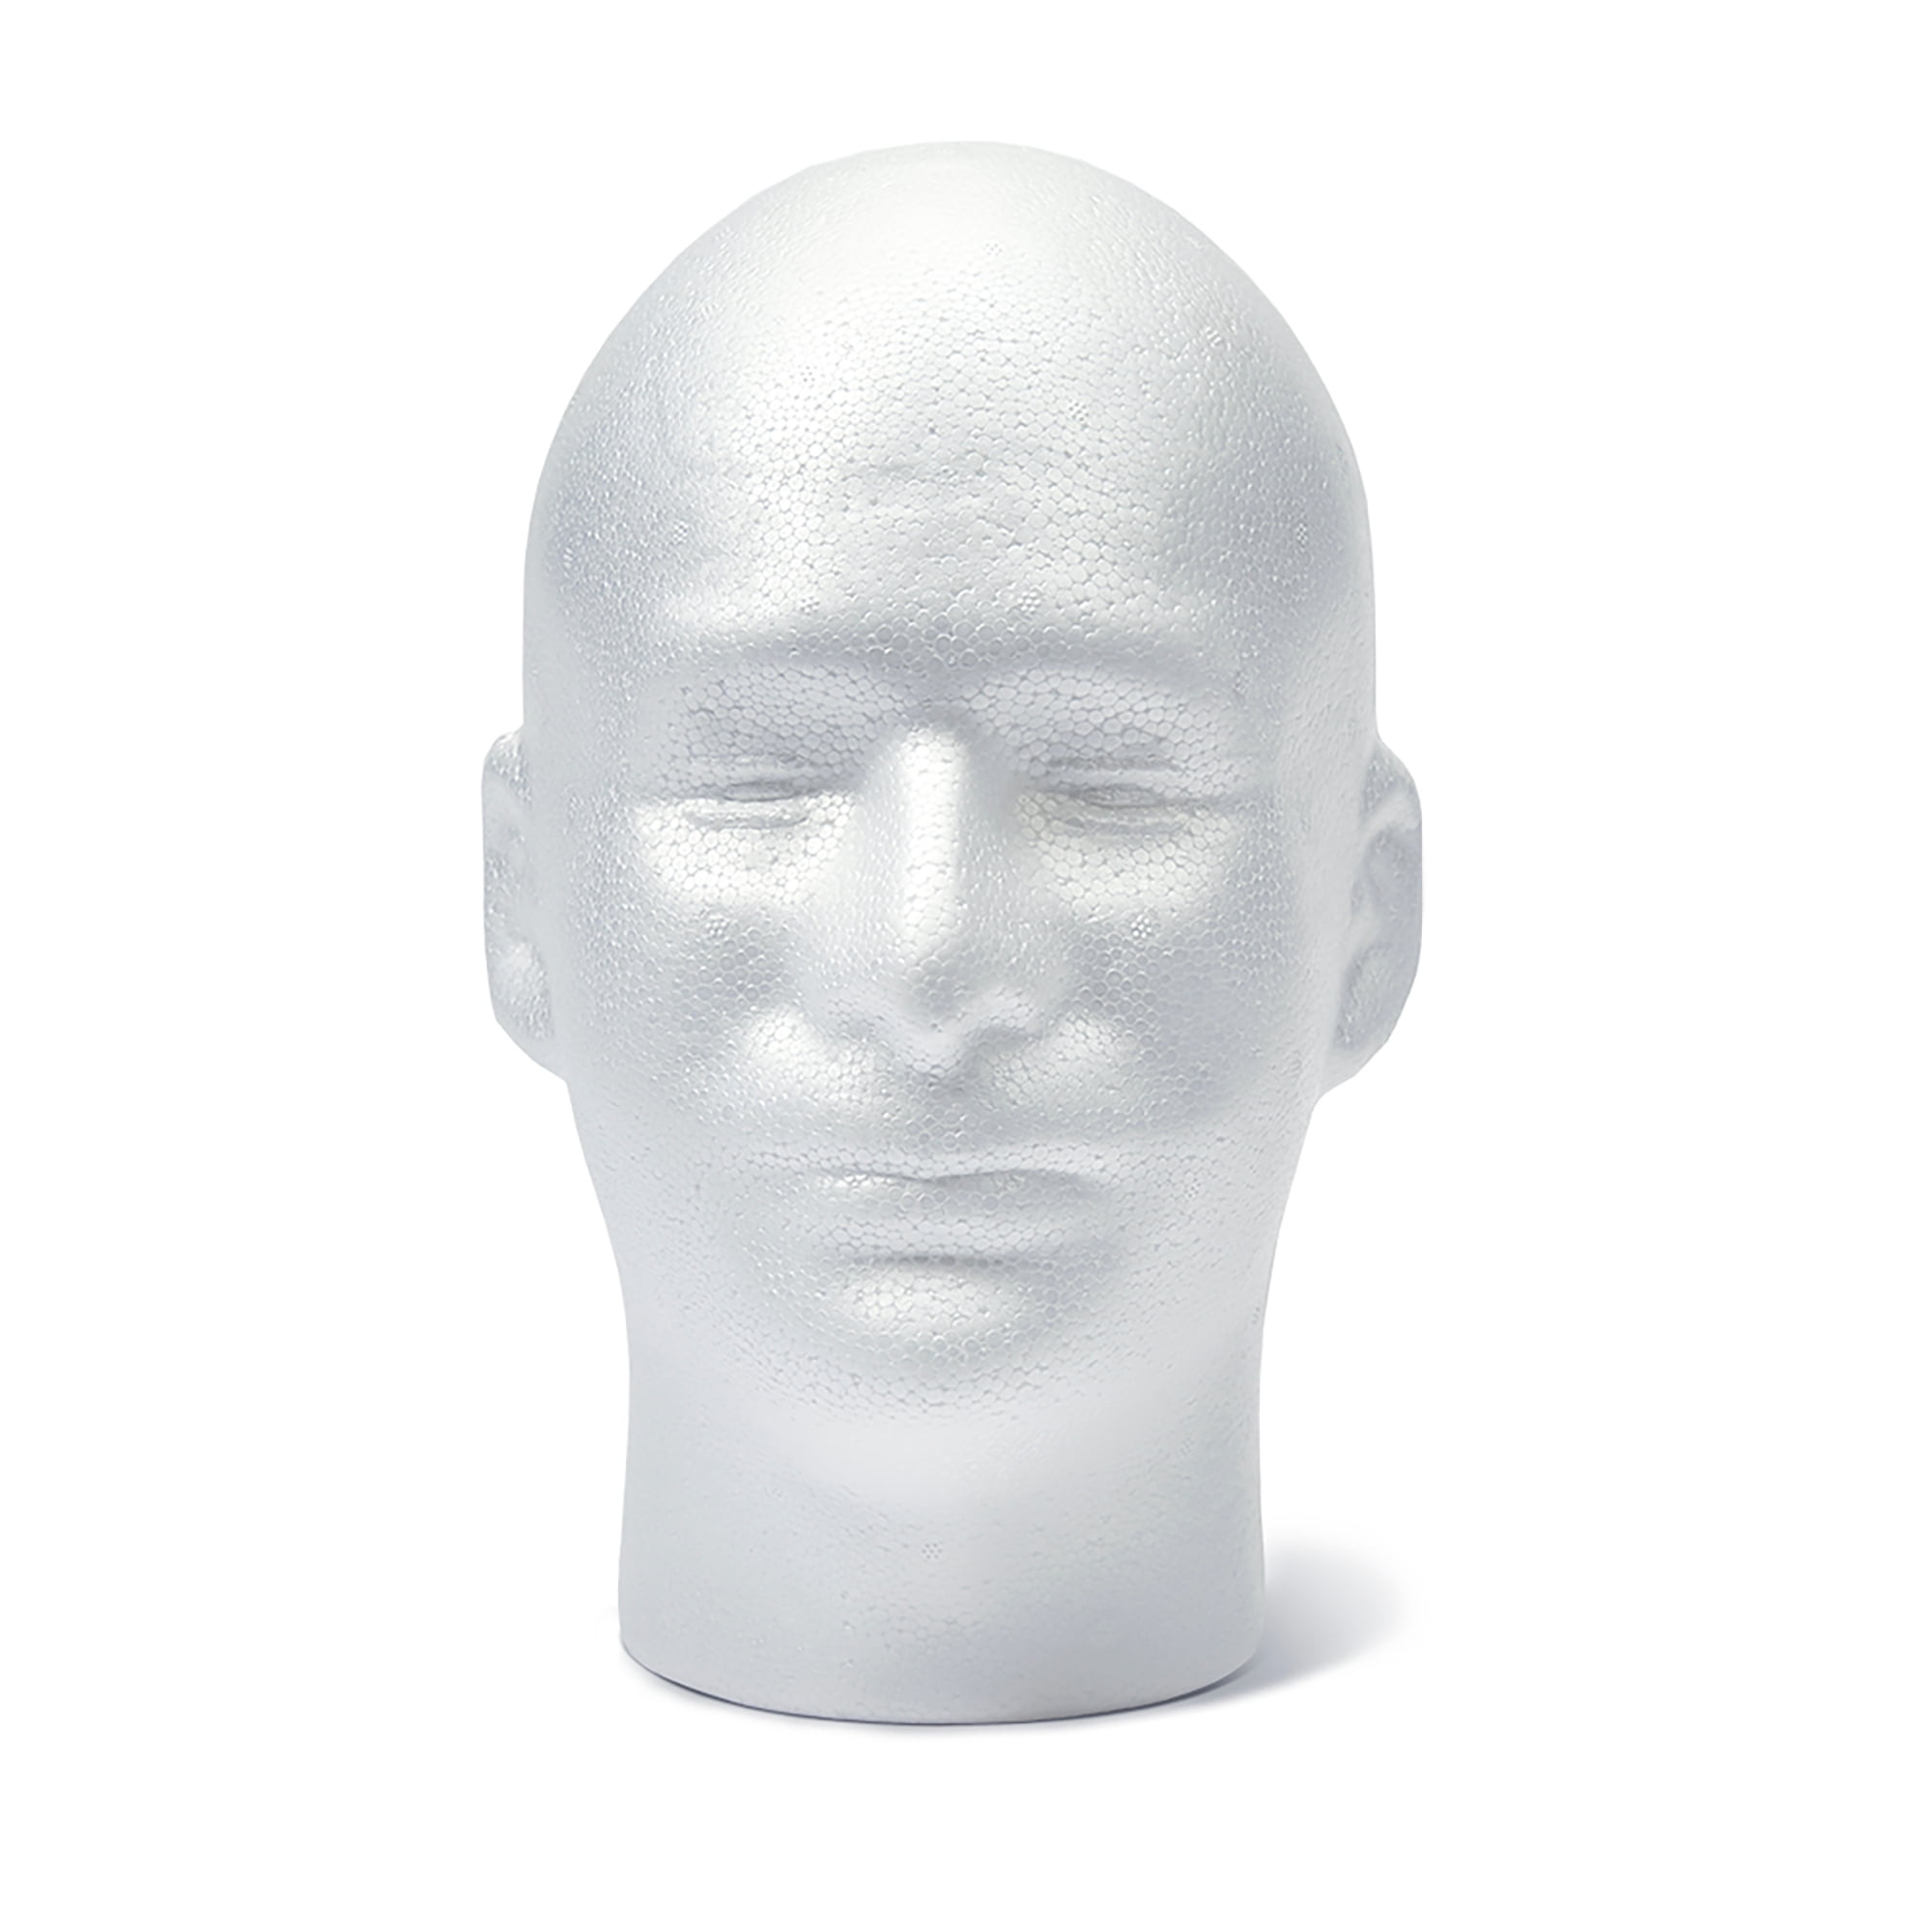 Styrofoam Head for Mask Making